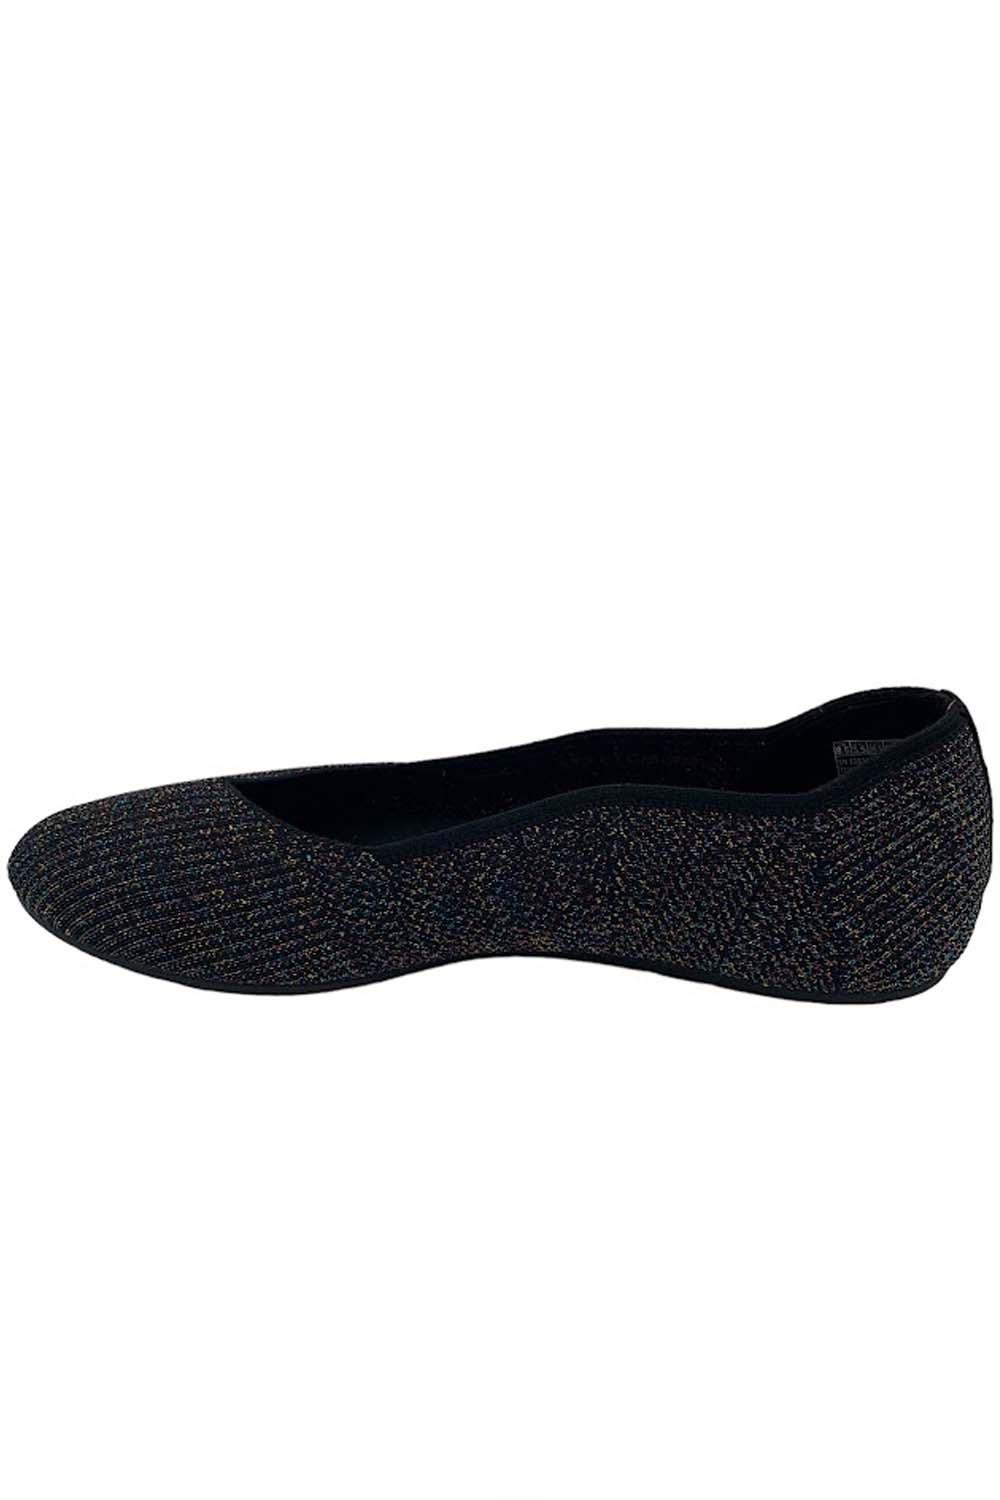 Skechers Cleo 2.0 Sparkle Knit Skimmers Shimmering Black Multi | Jender